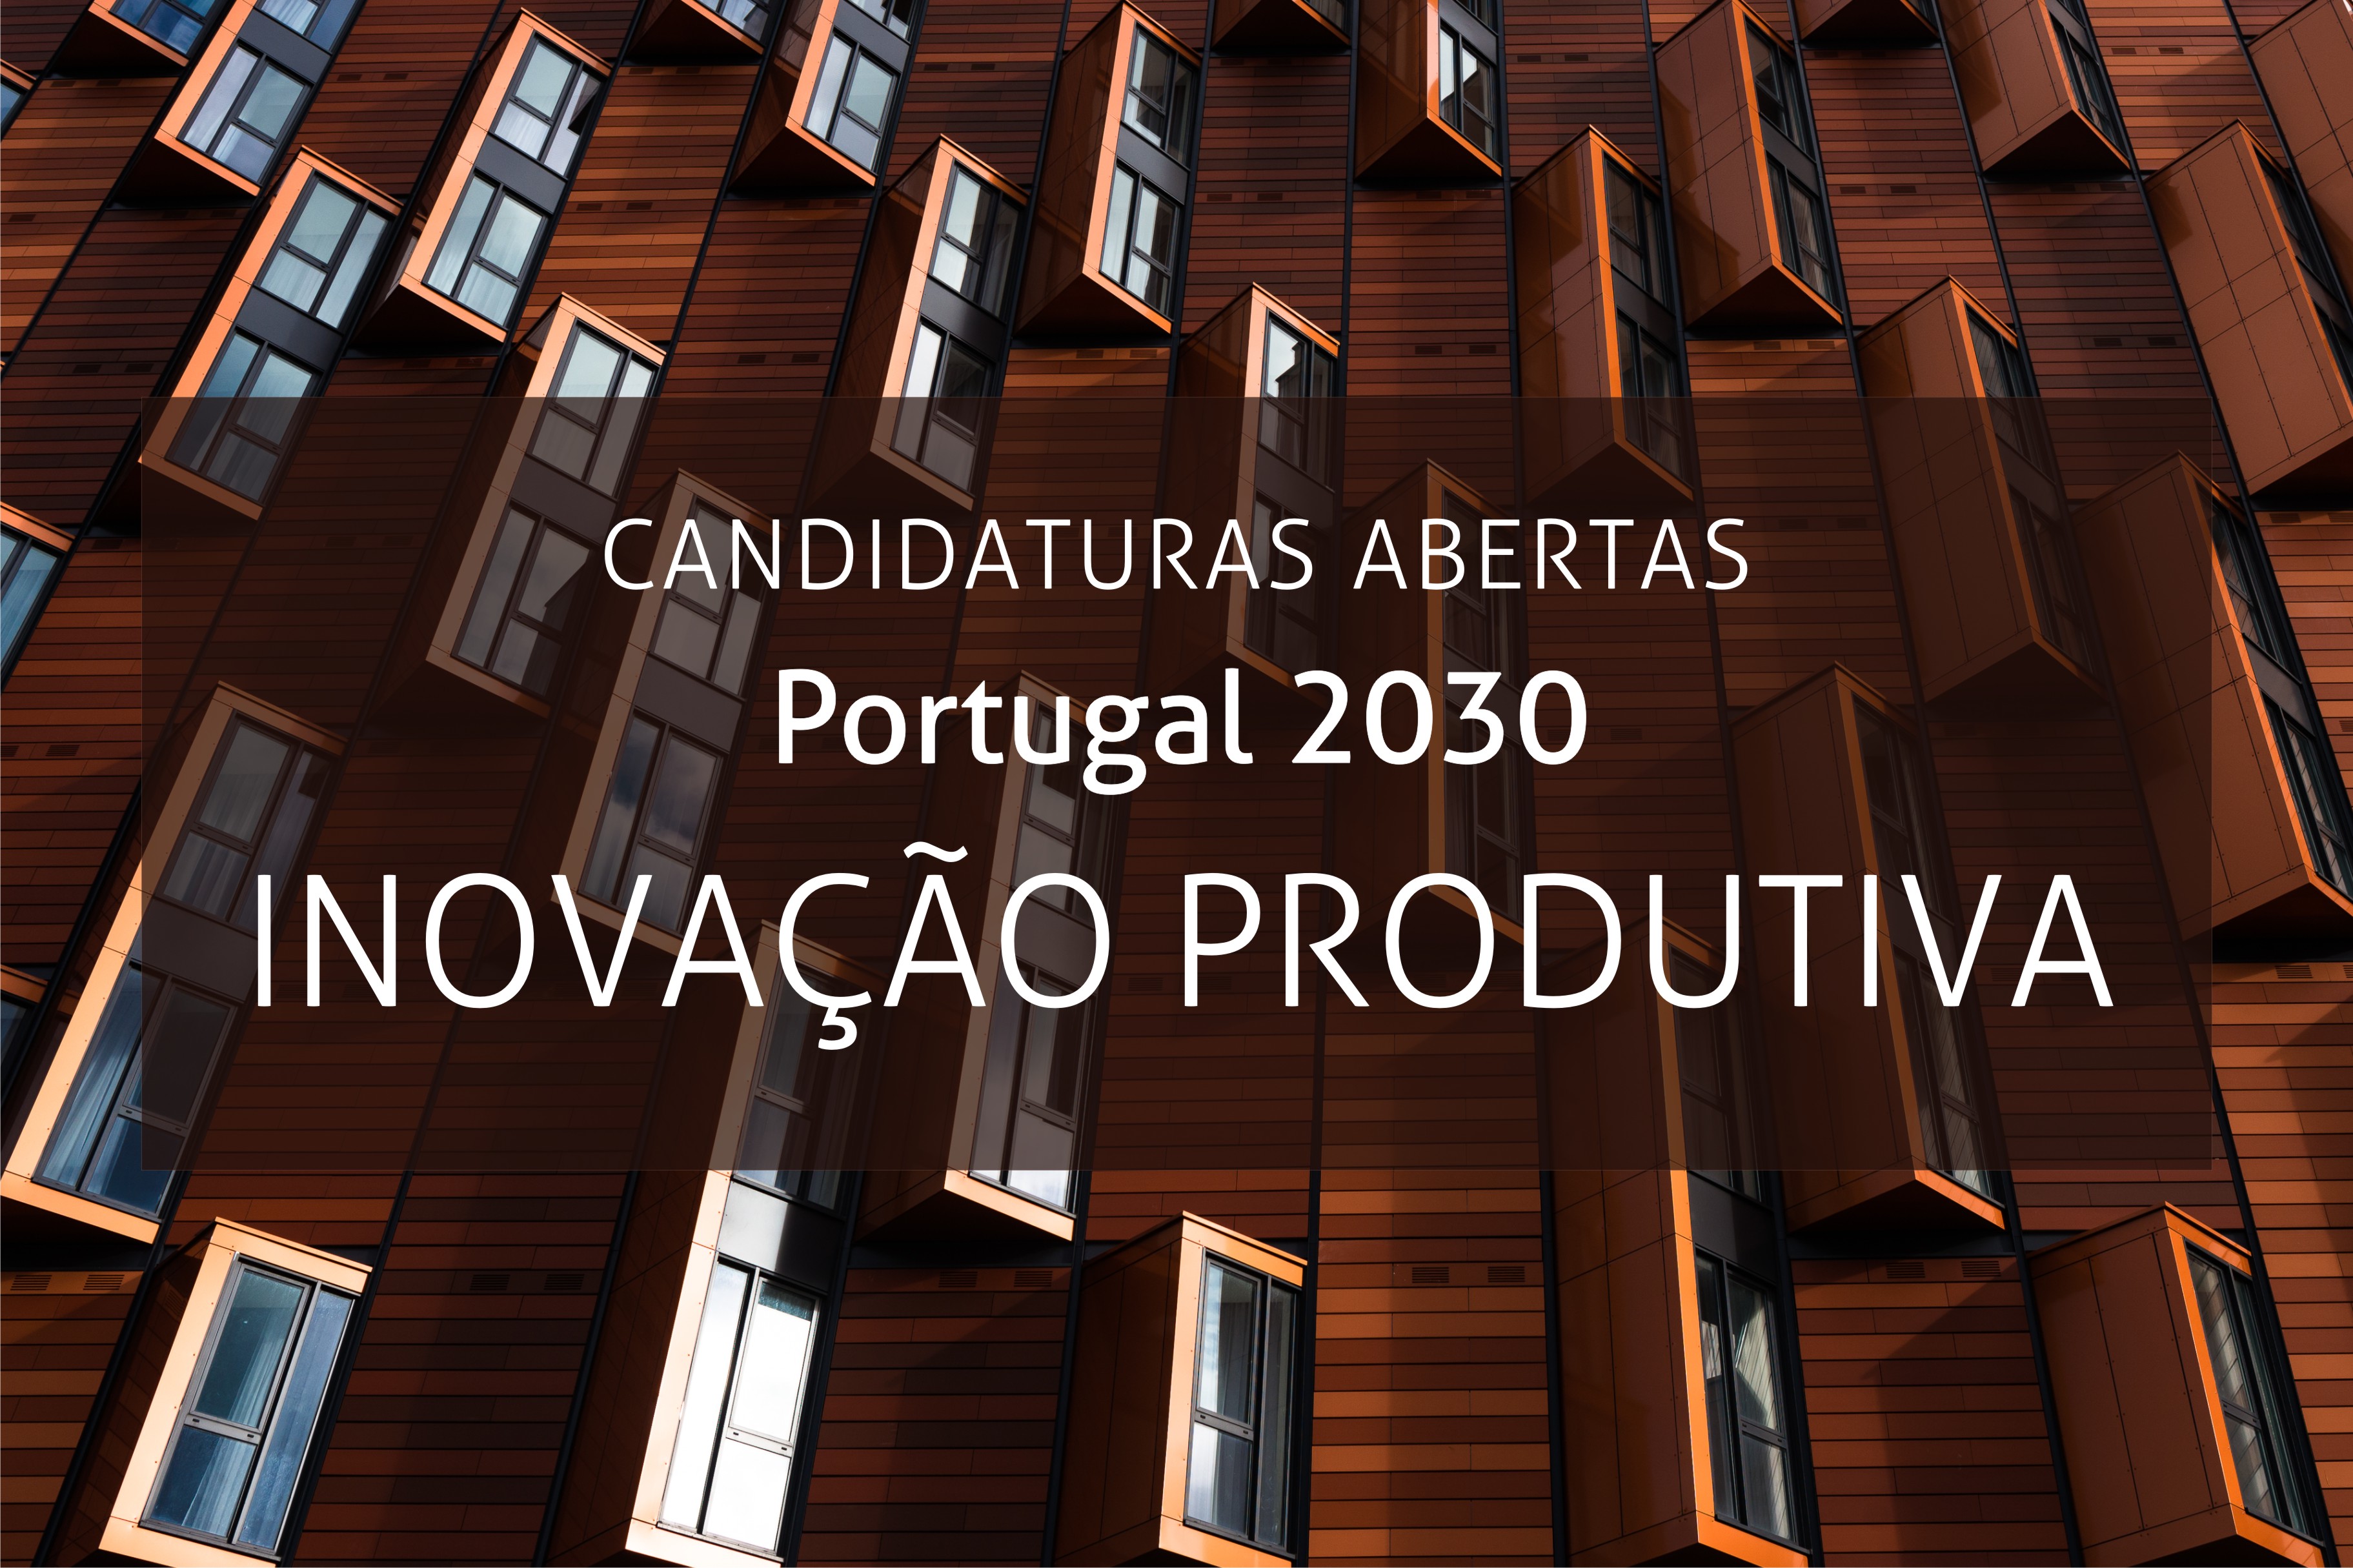 Sistema de Incentivos à Inovação Produtiva | Portugal 2030